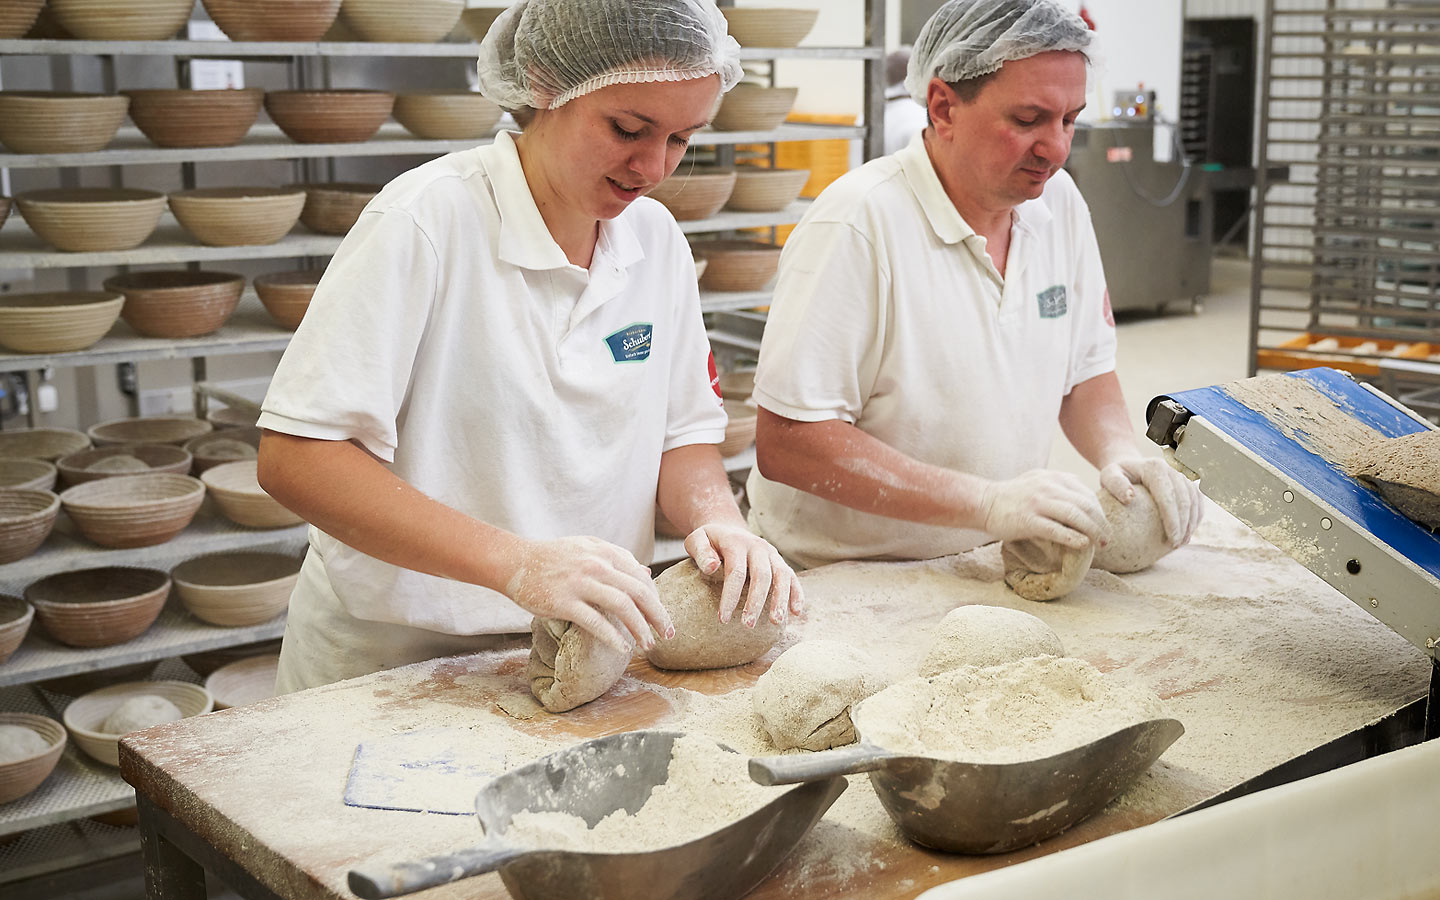 Bio Bäckerei Schubert – guter Teig ist die Grundlage für gutes Brot.